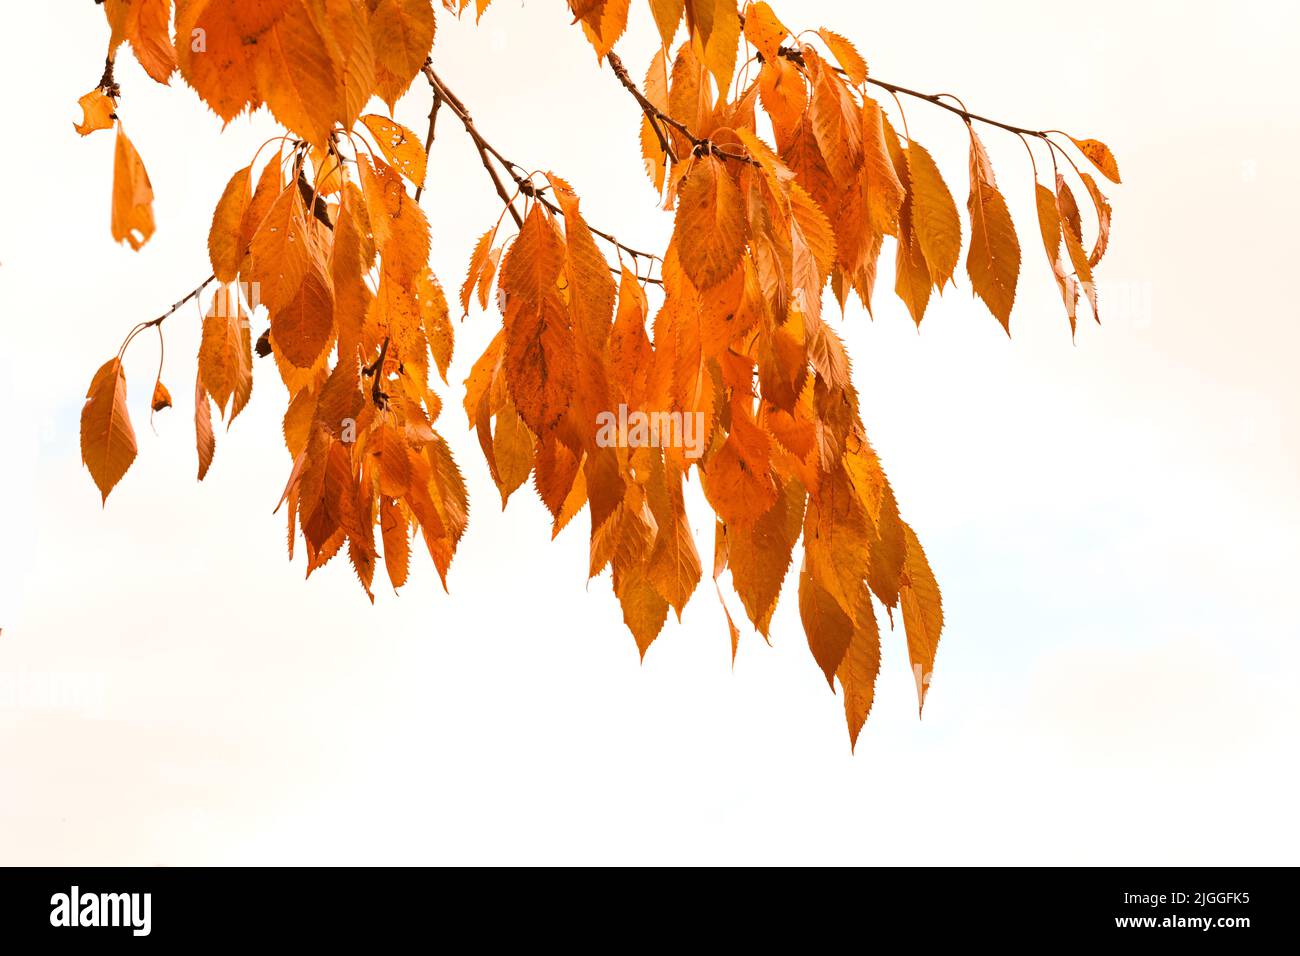 Herbstblätter hängen an einem Ast, isoliert vor weißem Hintergrund. Schöne helle und lebendige goldene Pflanzenblätter im Winter Herbst Stockfoto